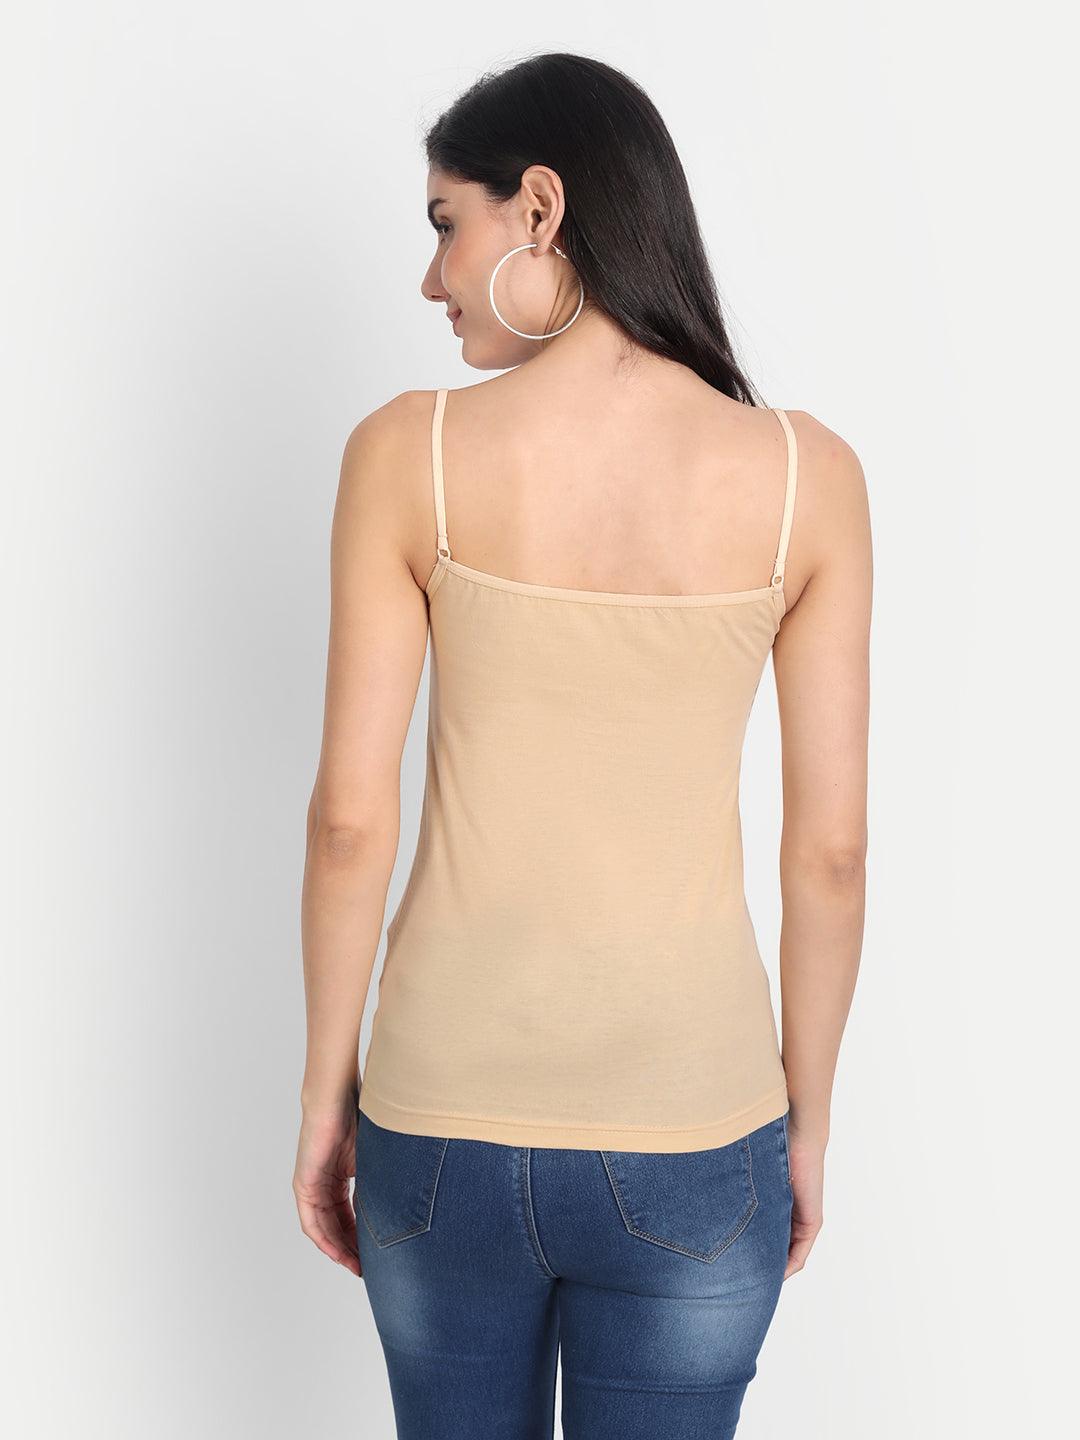 Women's Regular Cotton Sleeveless Adjustable Strap Camisole Slip Spaghetti